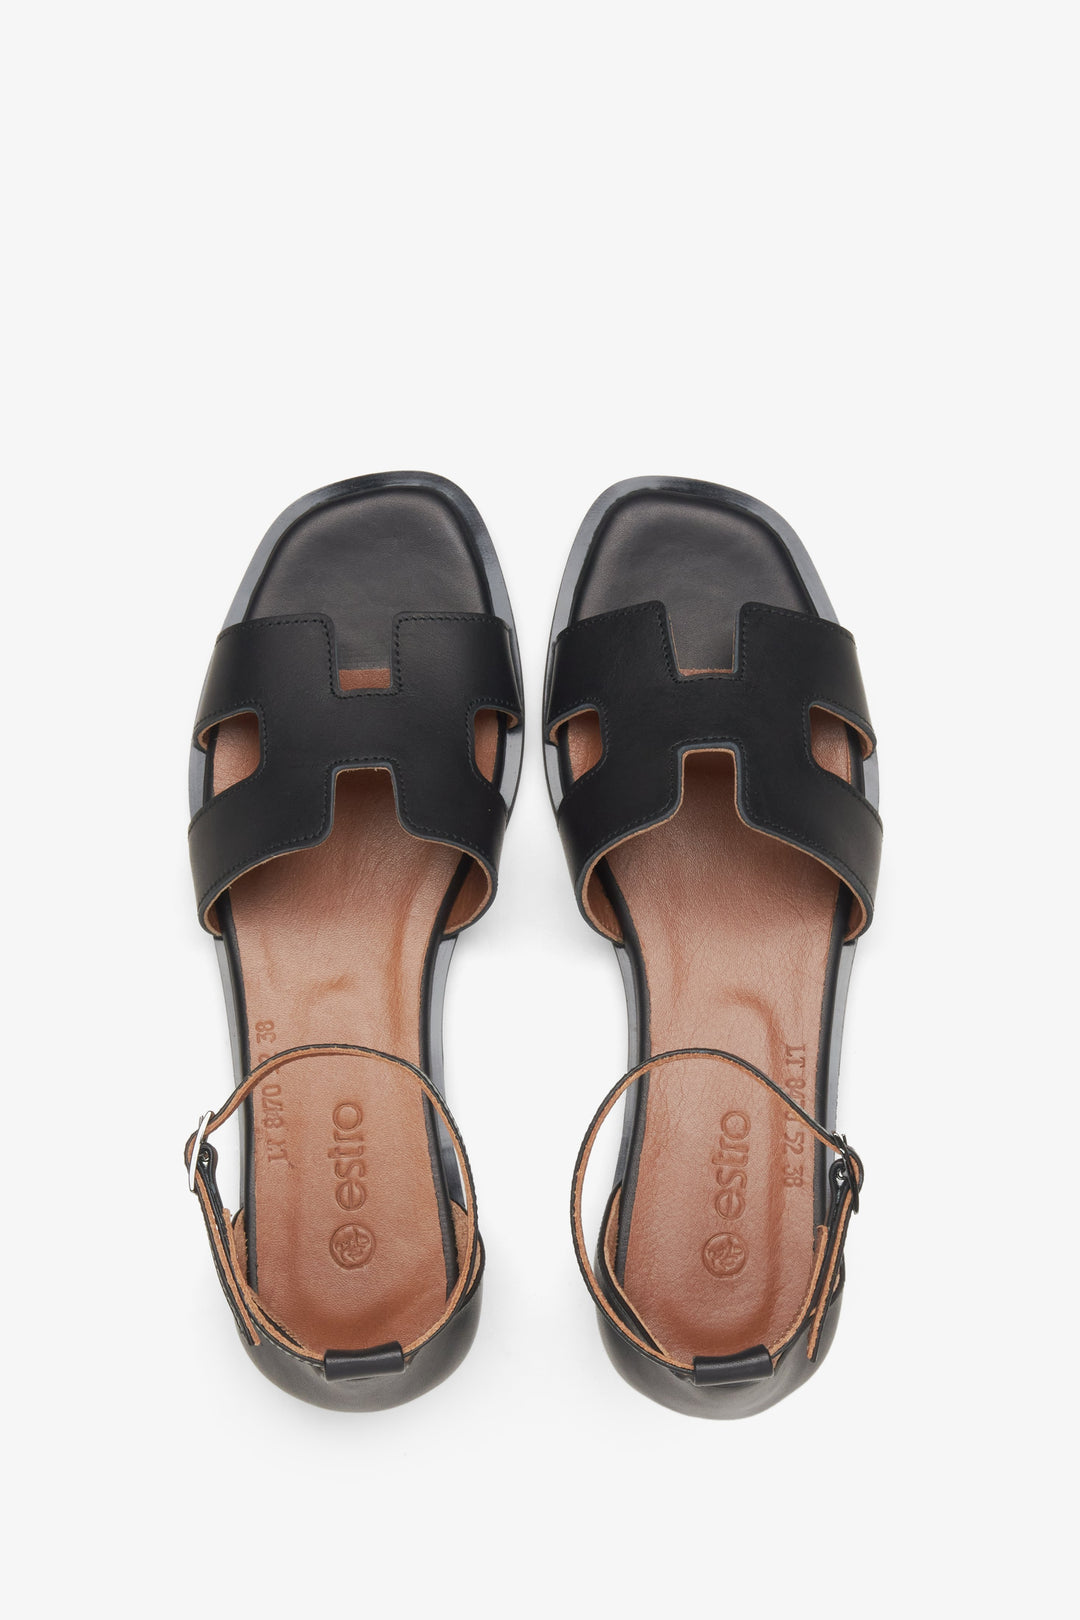 Damskie skórzane sandały Estro w kolorze czarnym - prezentacja modelu z góry.